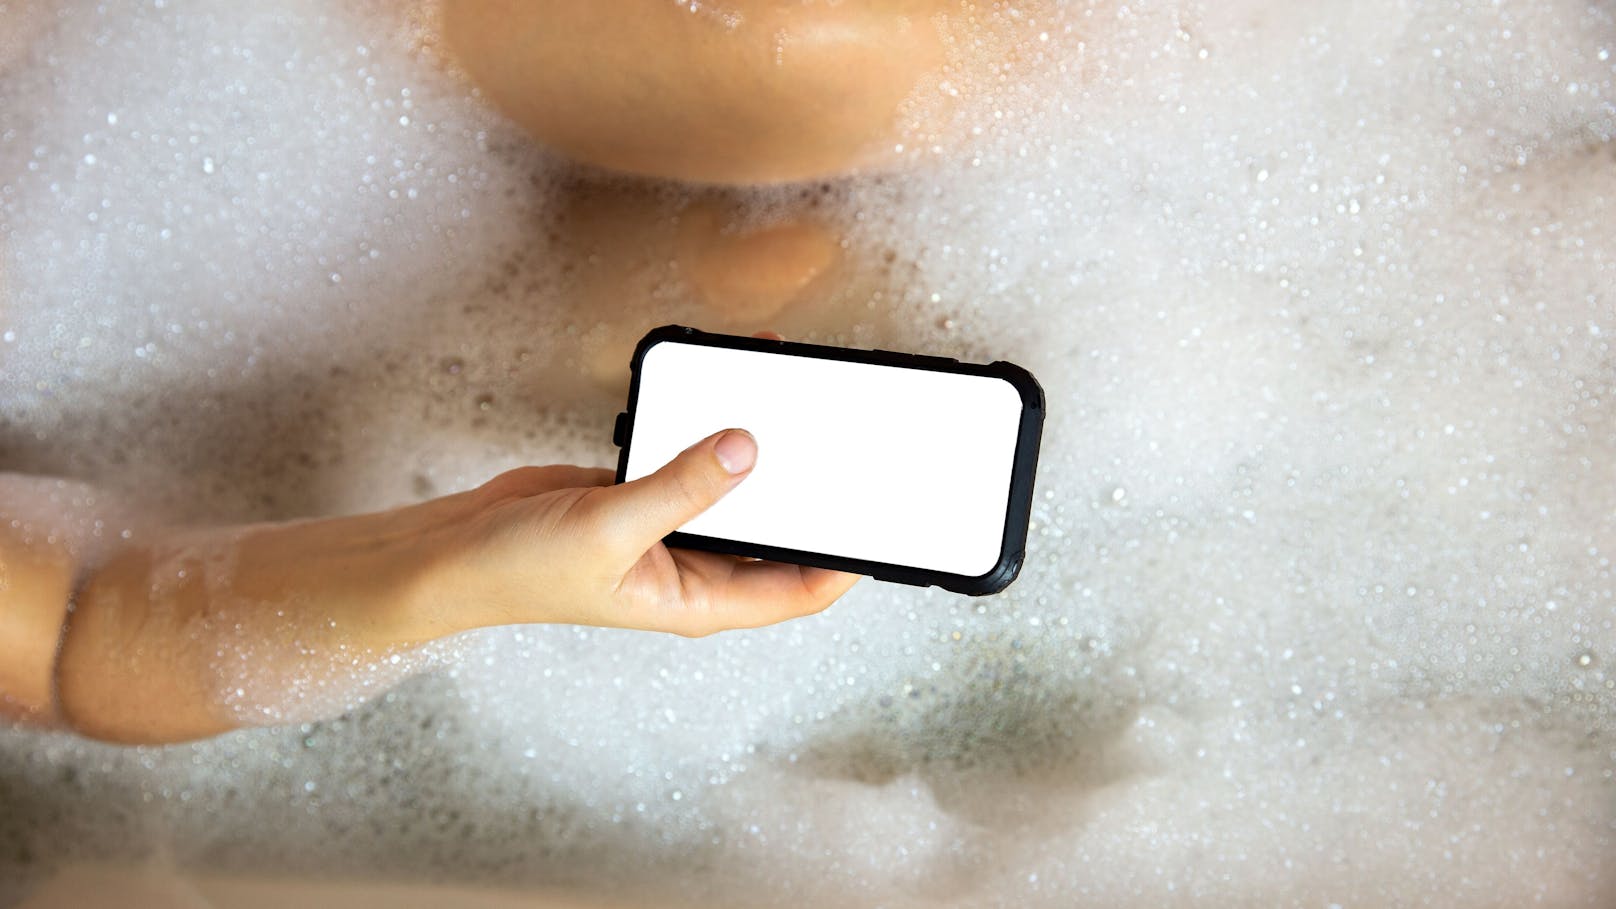 Telefonieren in der Badewanne kann oft fatale Folgen haben.